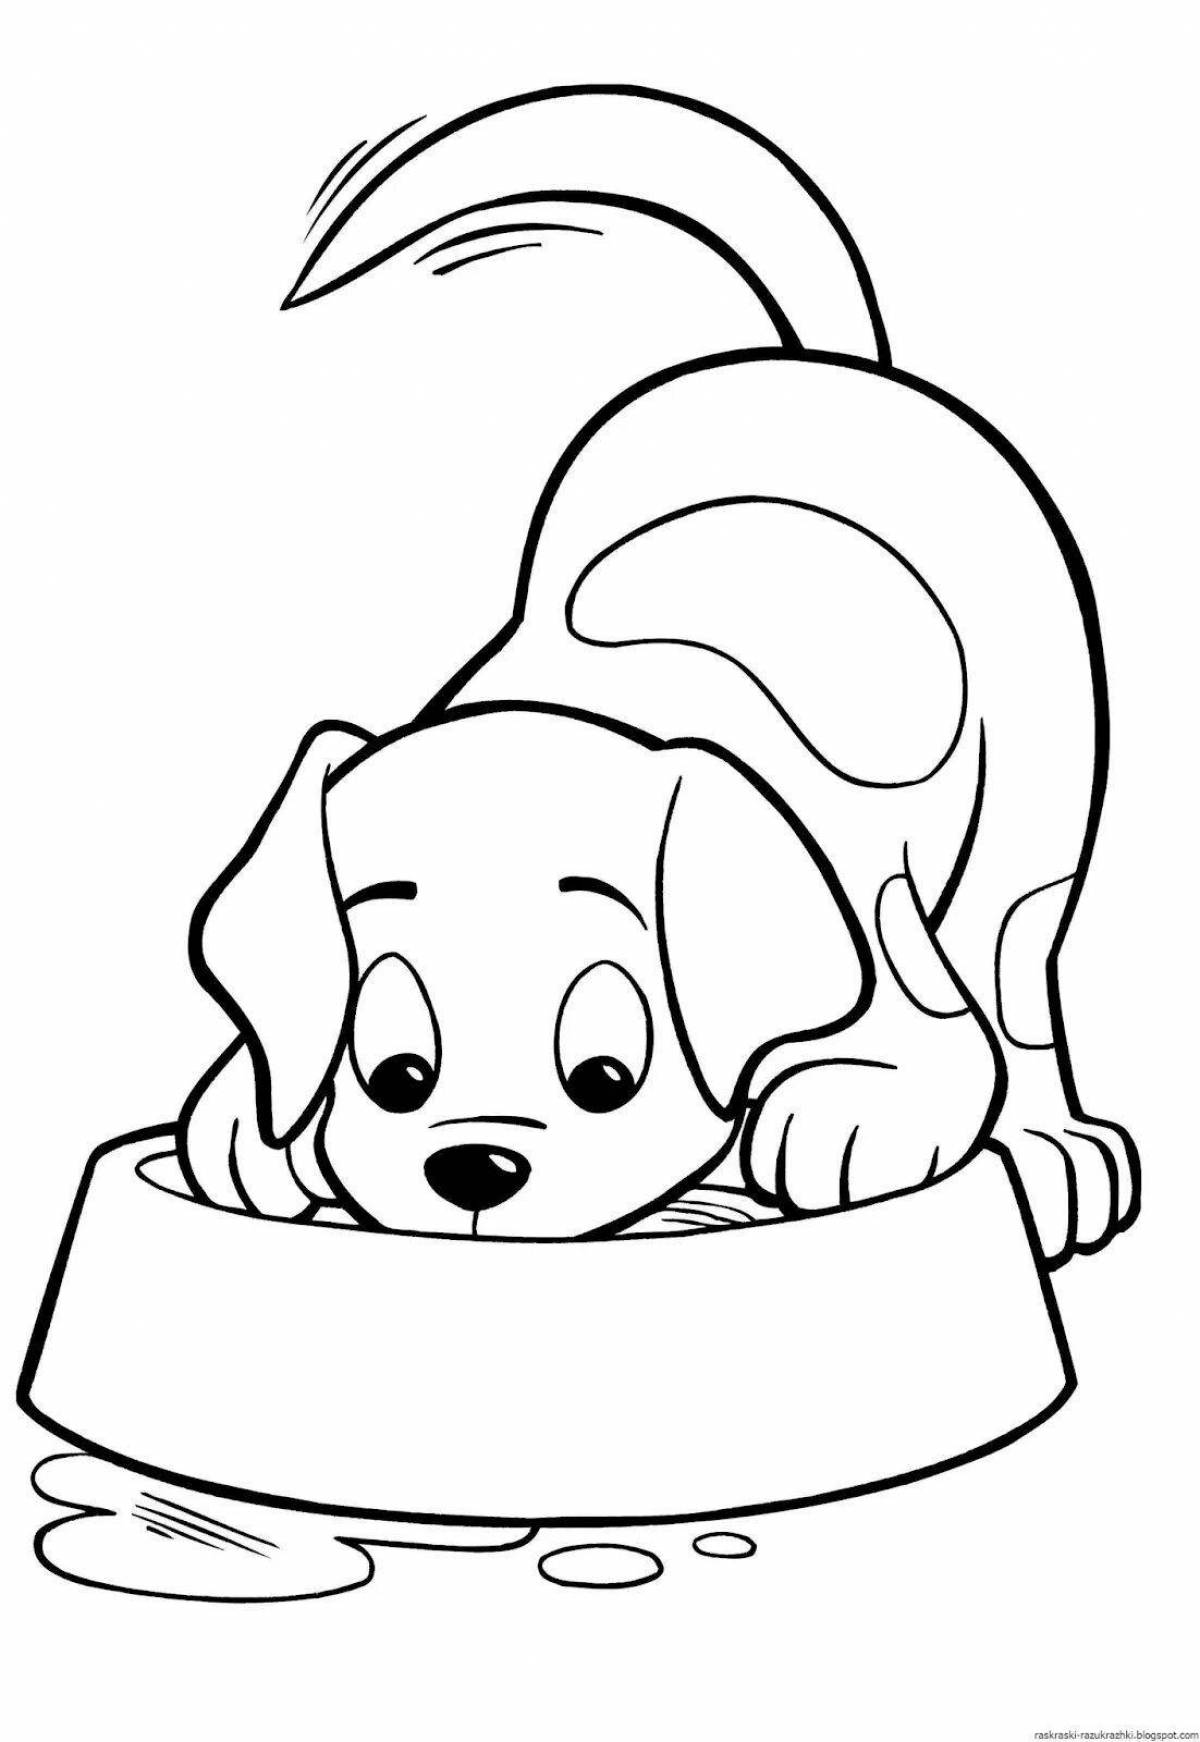 Юмористическая собачка-раскраска для детей 5-6 лет